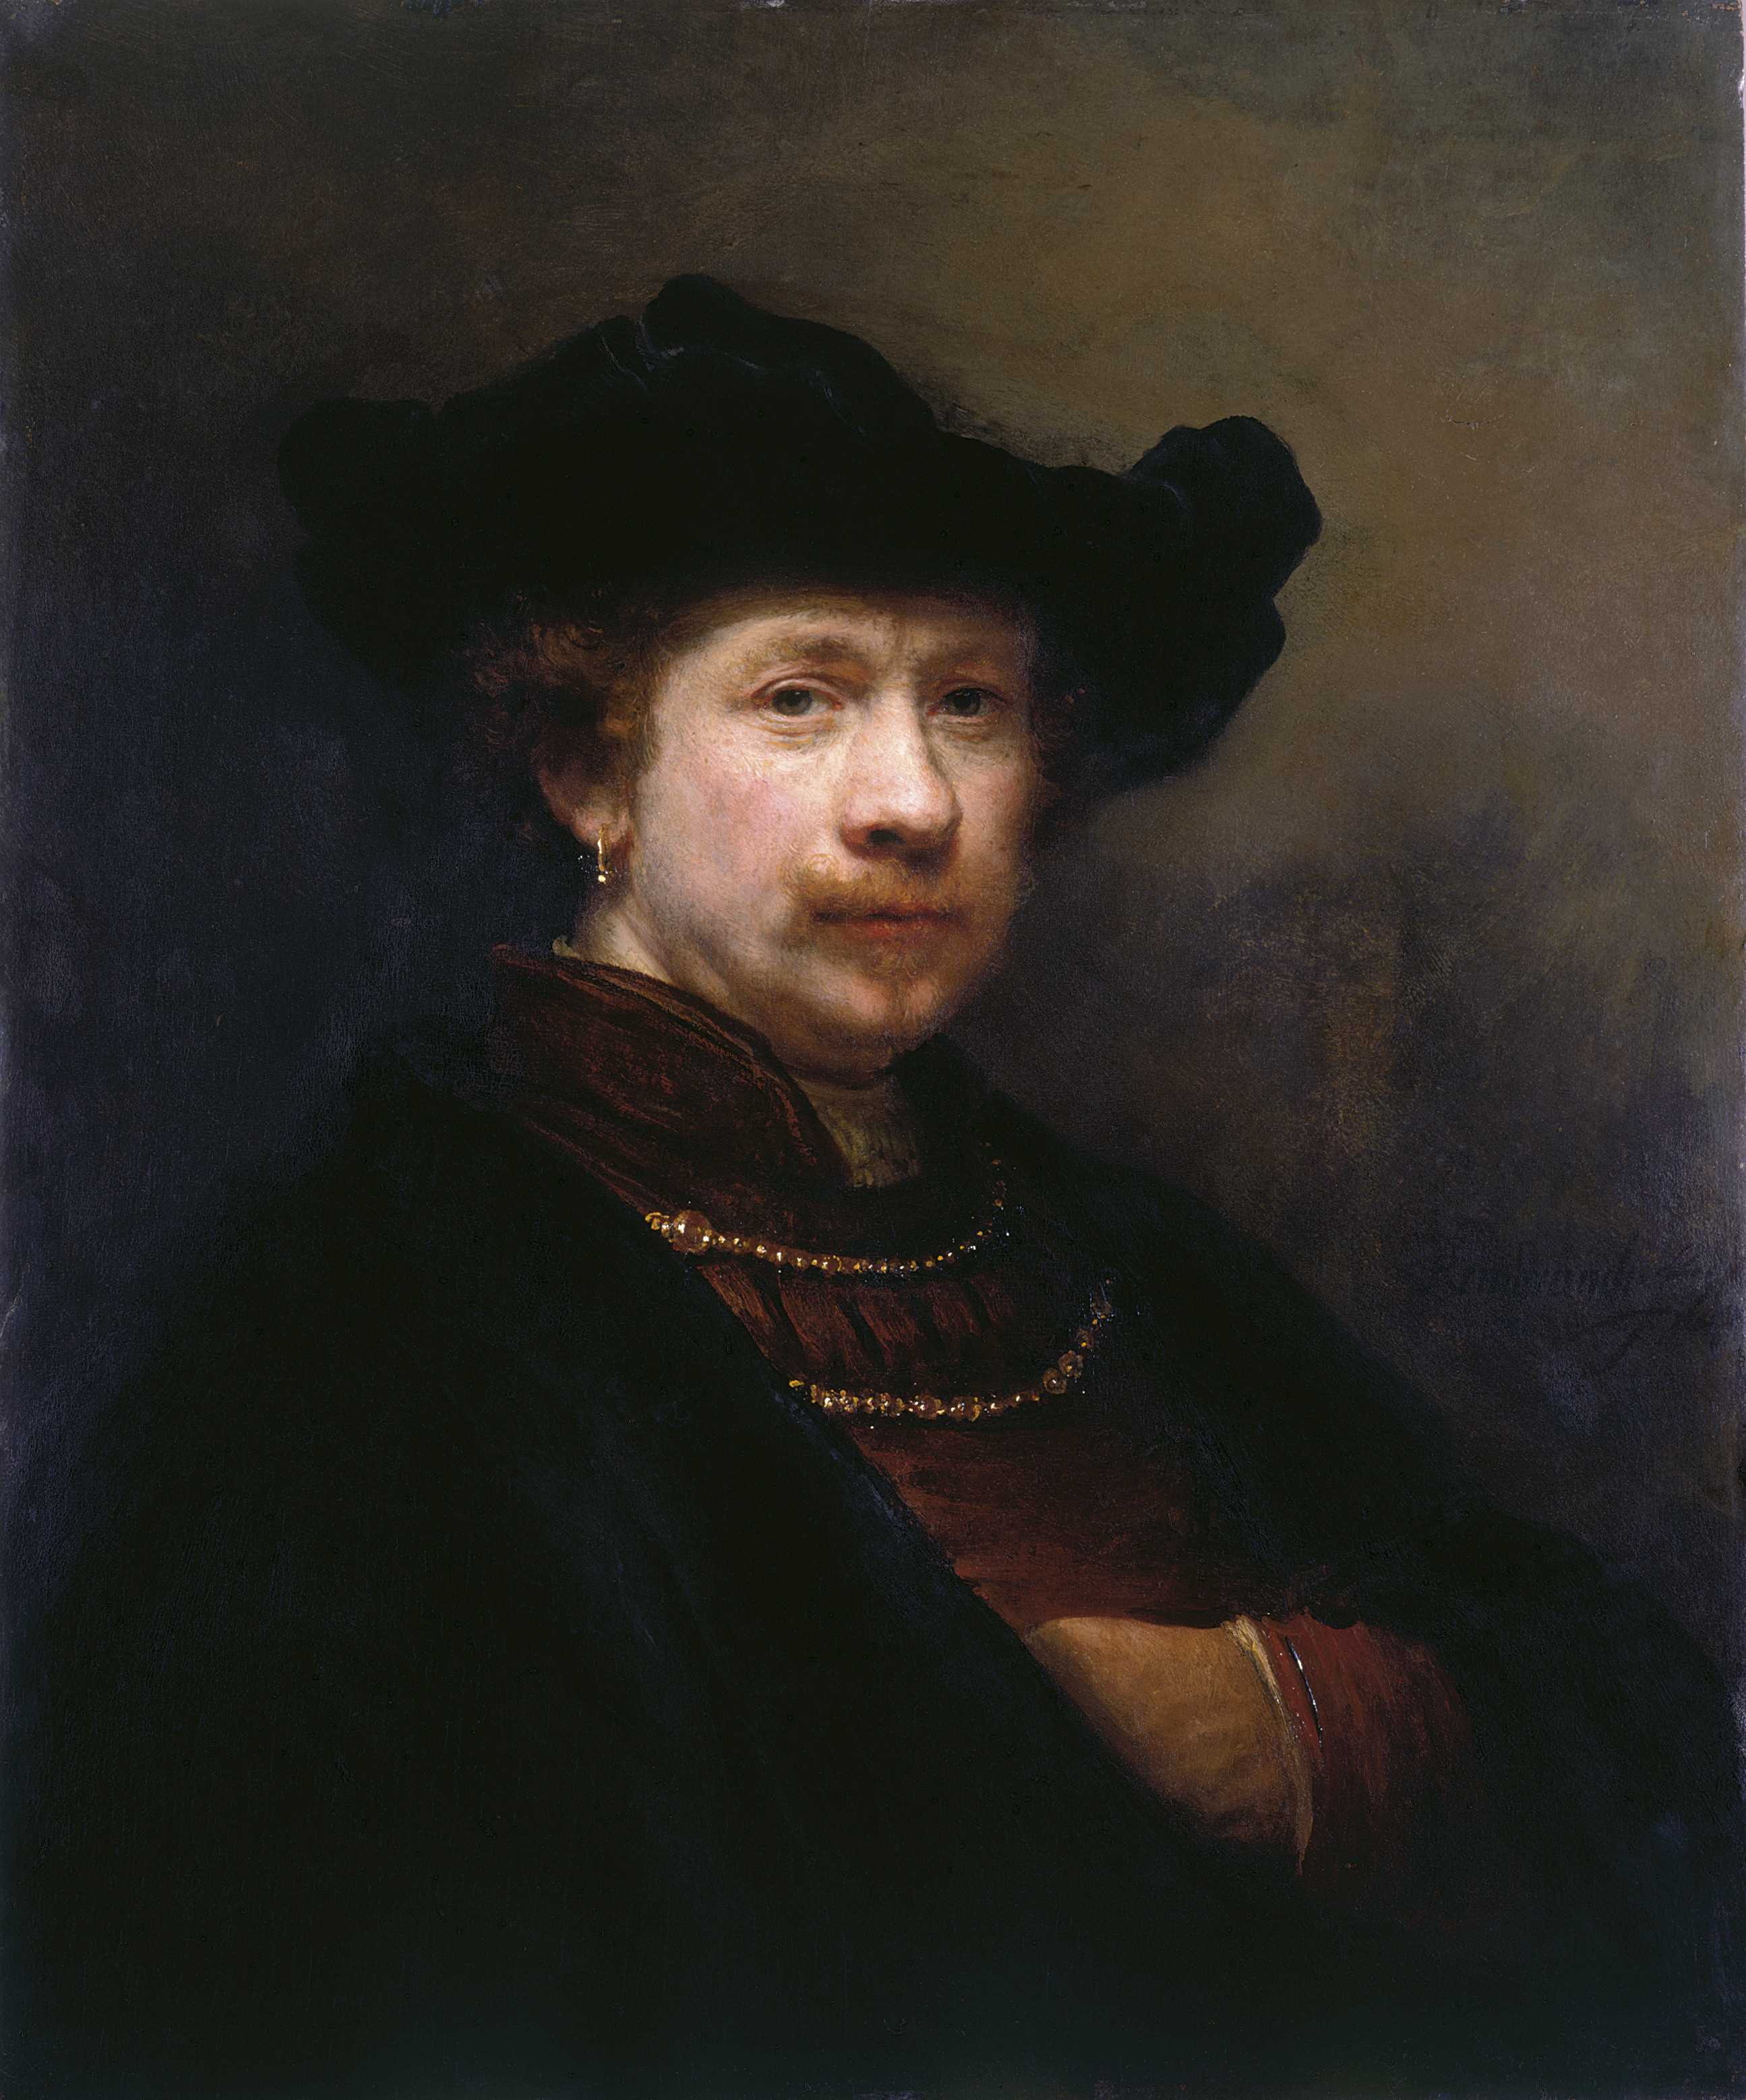 Rembrandt van Rijn, Self Portrait, 1642, Royal Collection Trust/© Her Majesty Queen Elizabeth II 2019